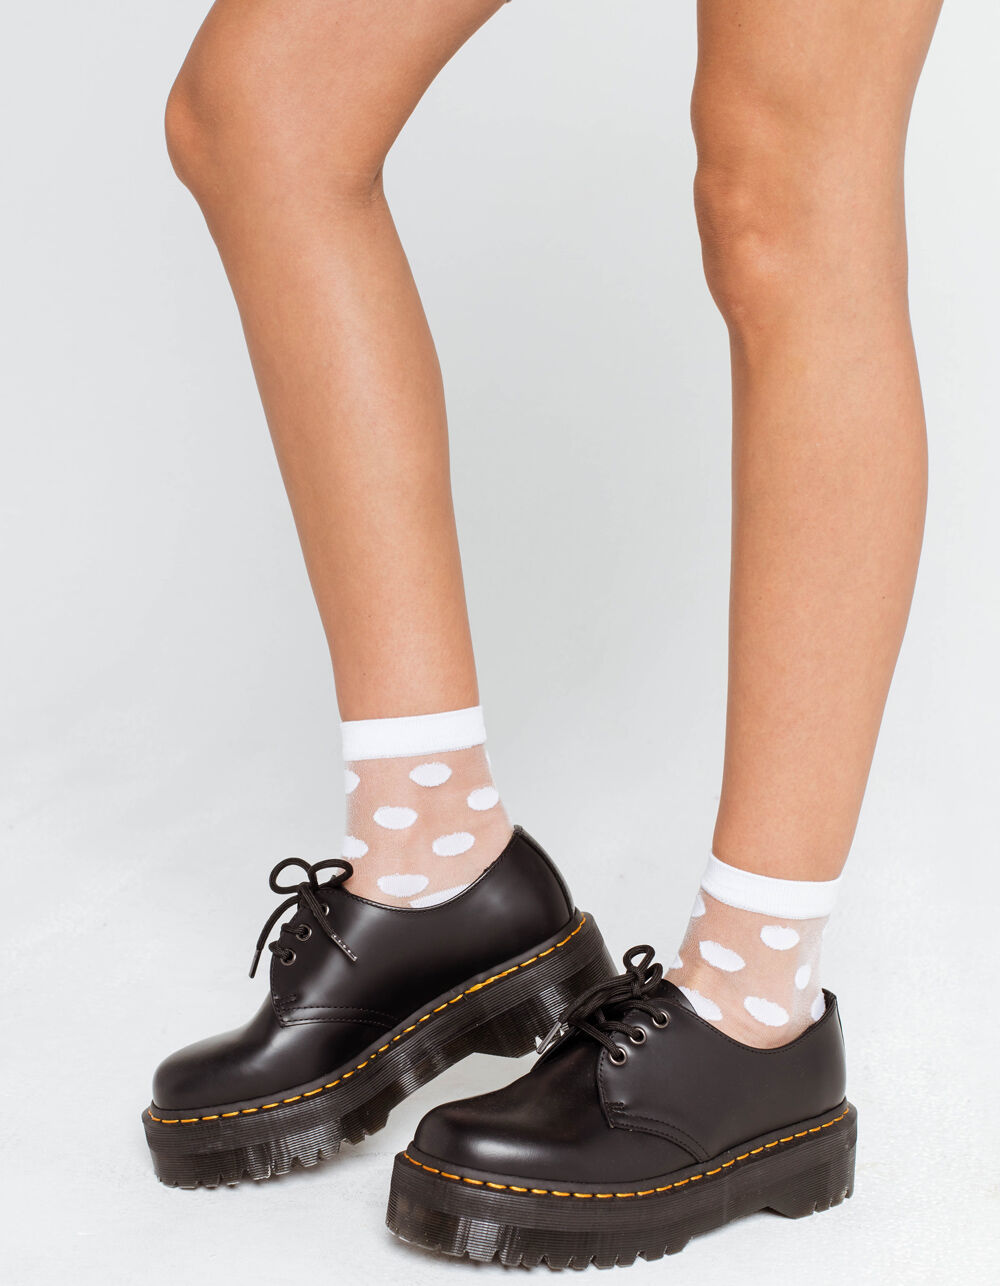 Sheer Polka Dot Womens Ankle Socks - WHITE | Tillys